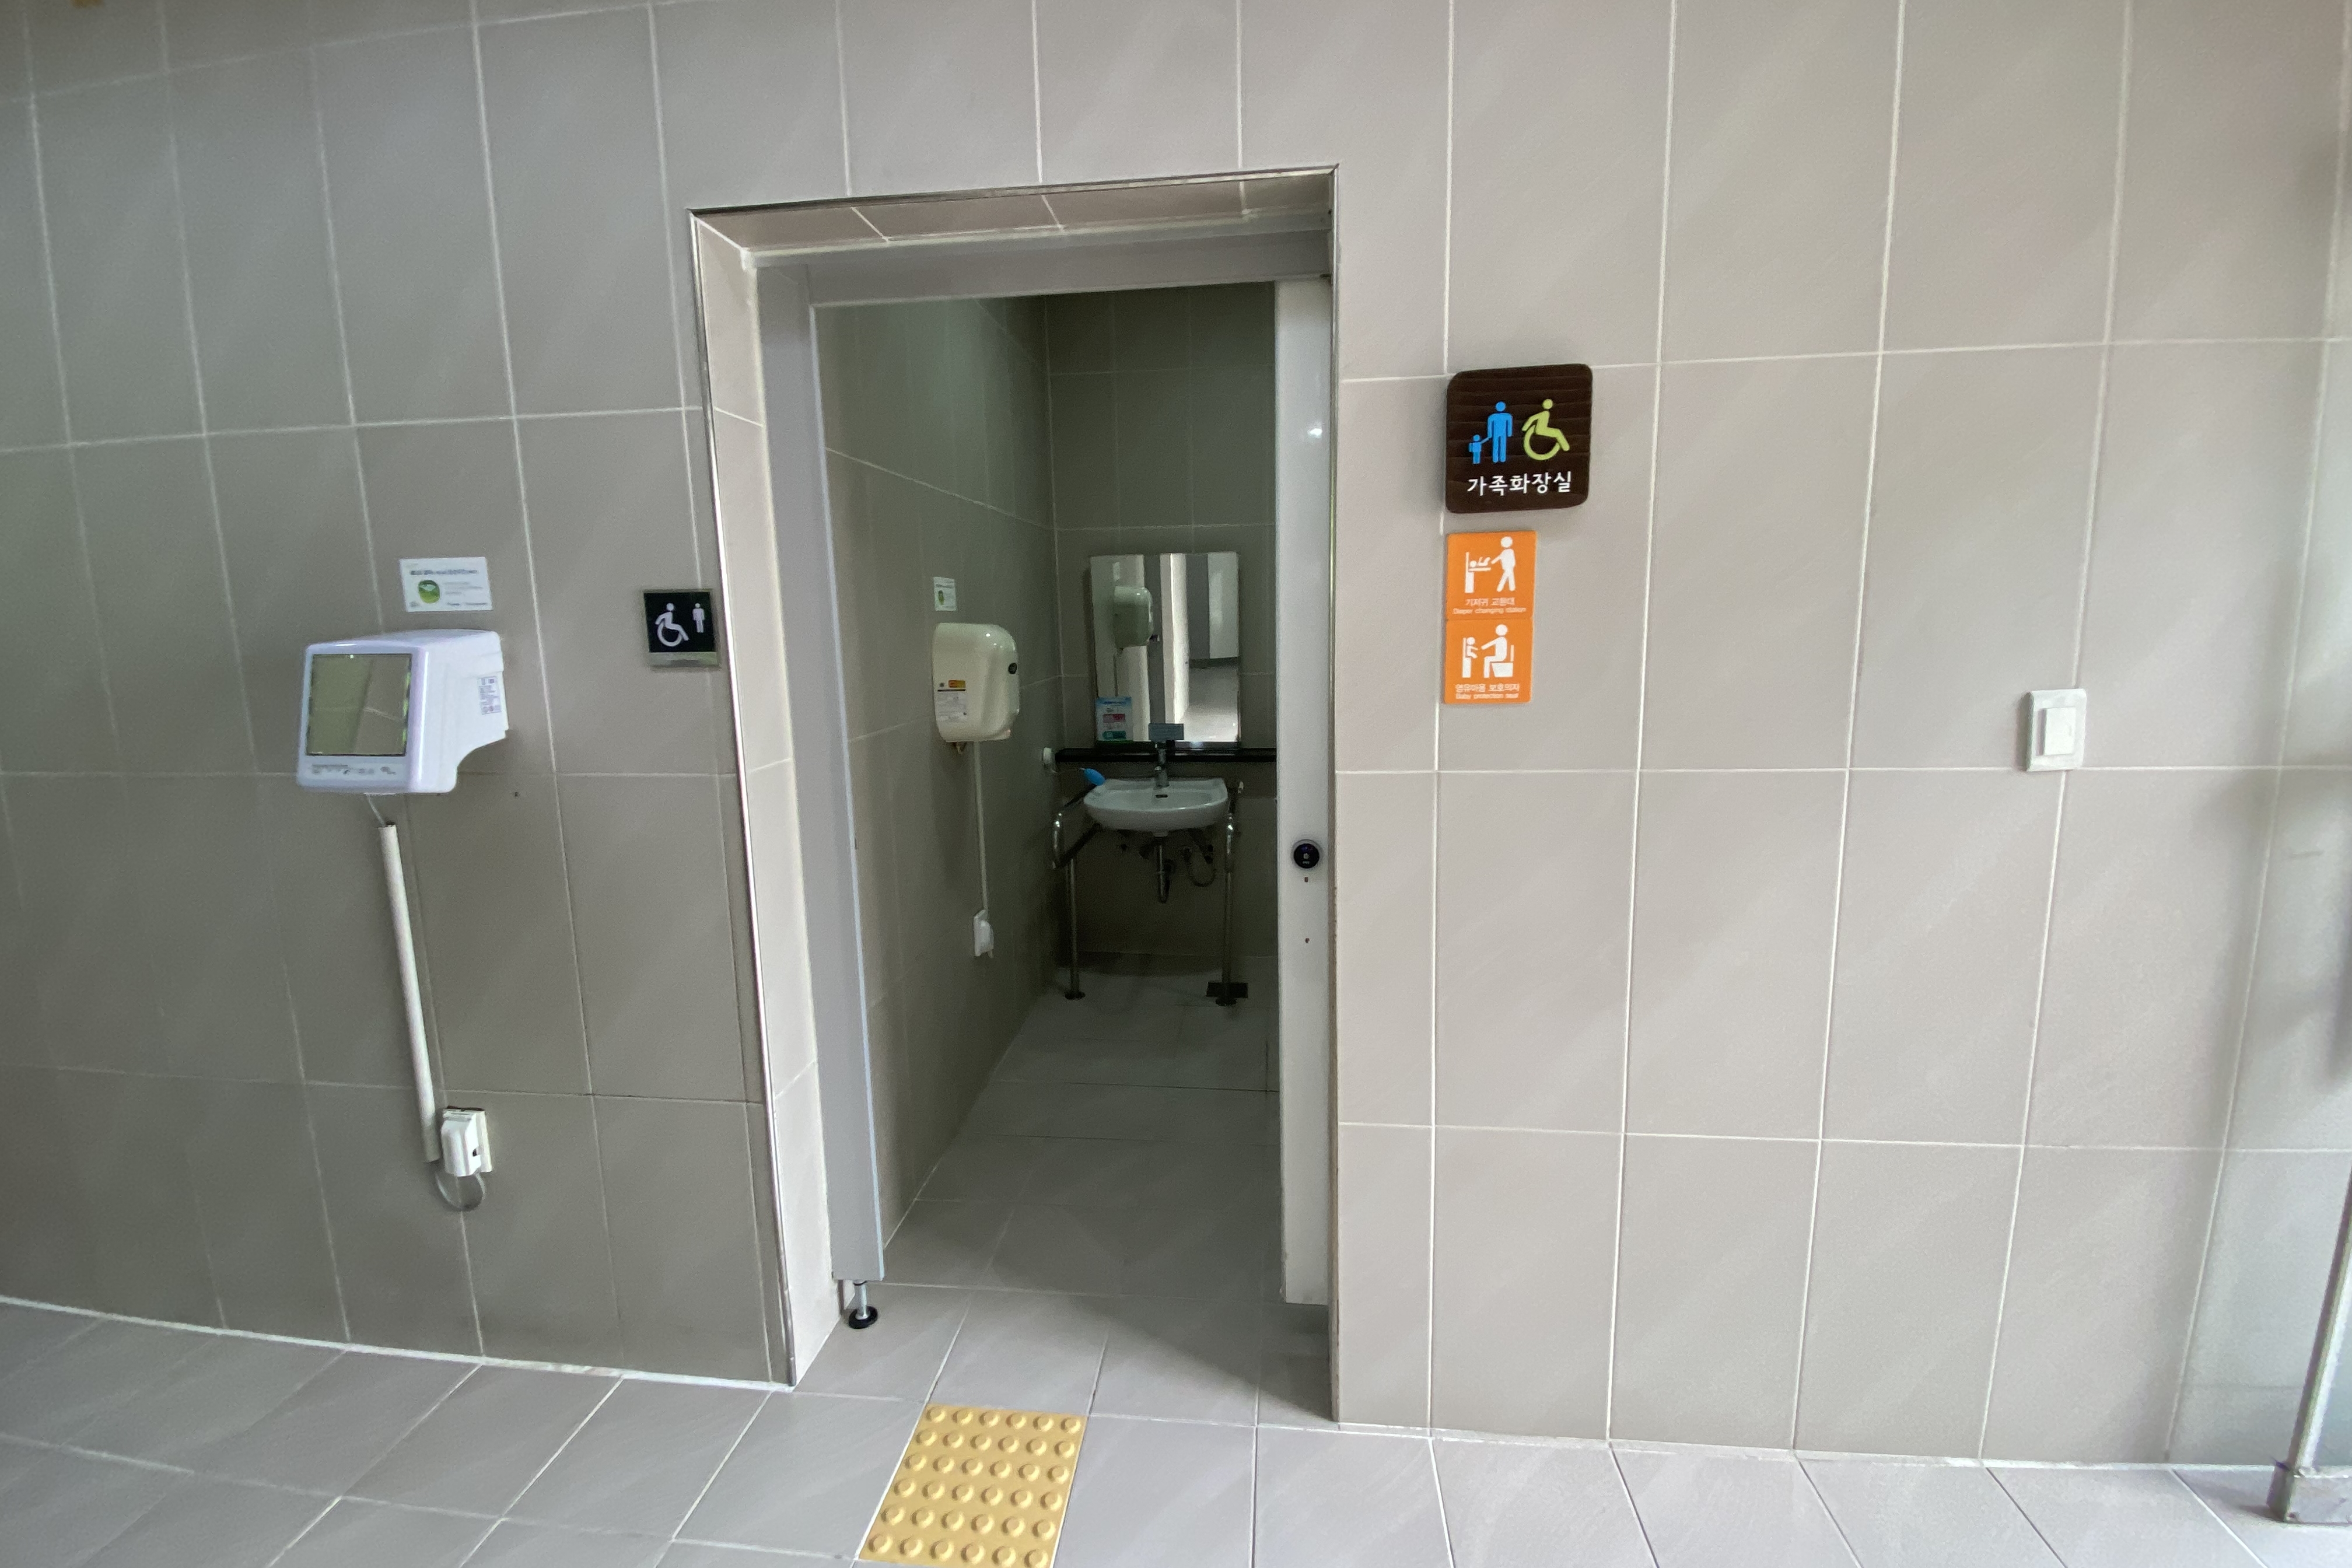 장애인화장실0 : 서울어린이대공원 장애인화장실 출입구 전경